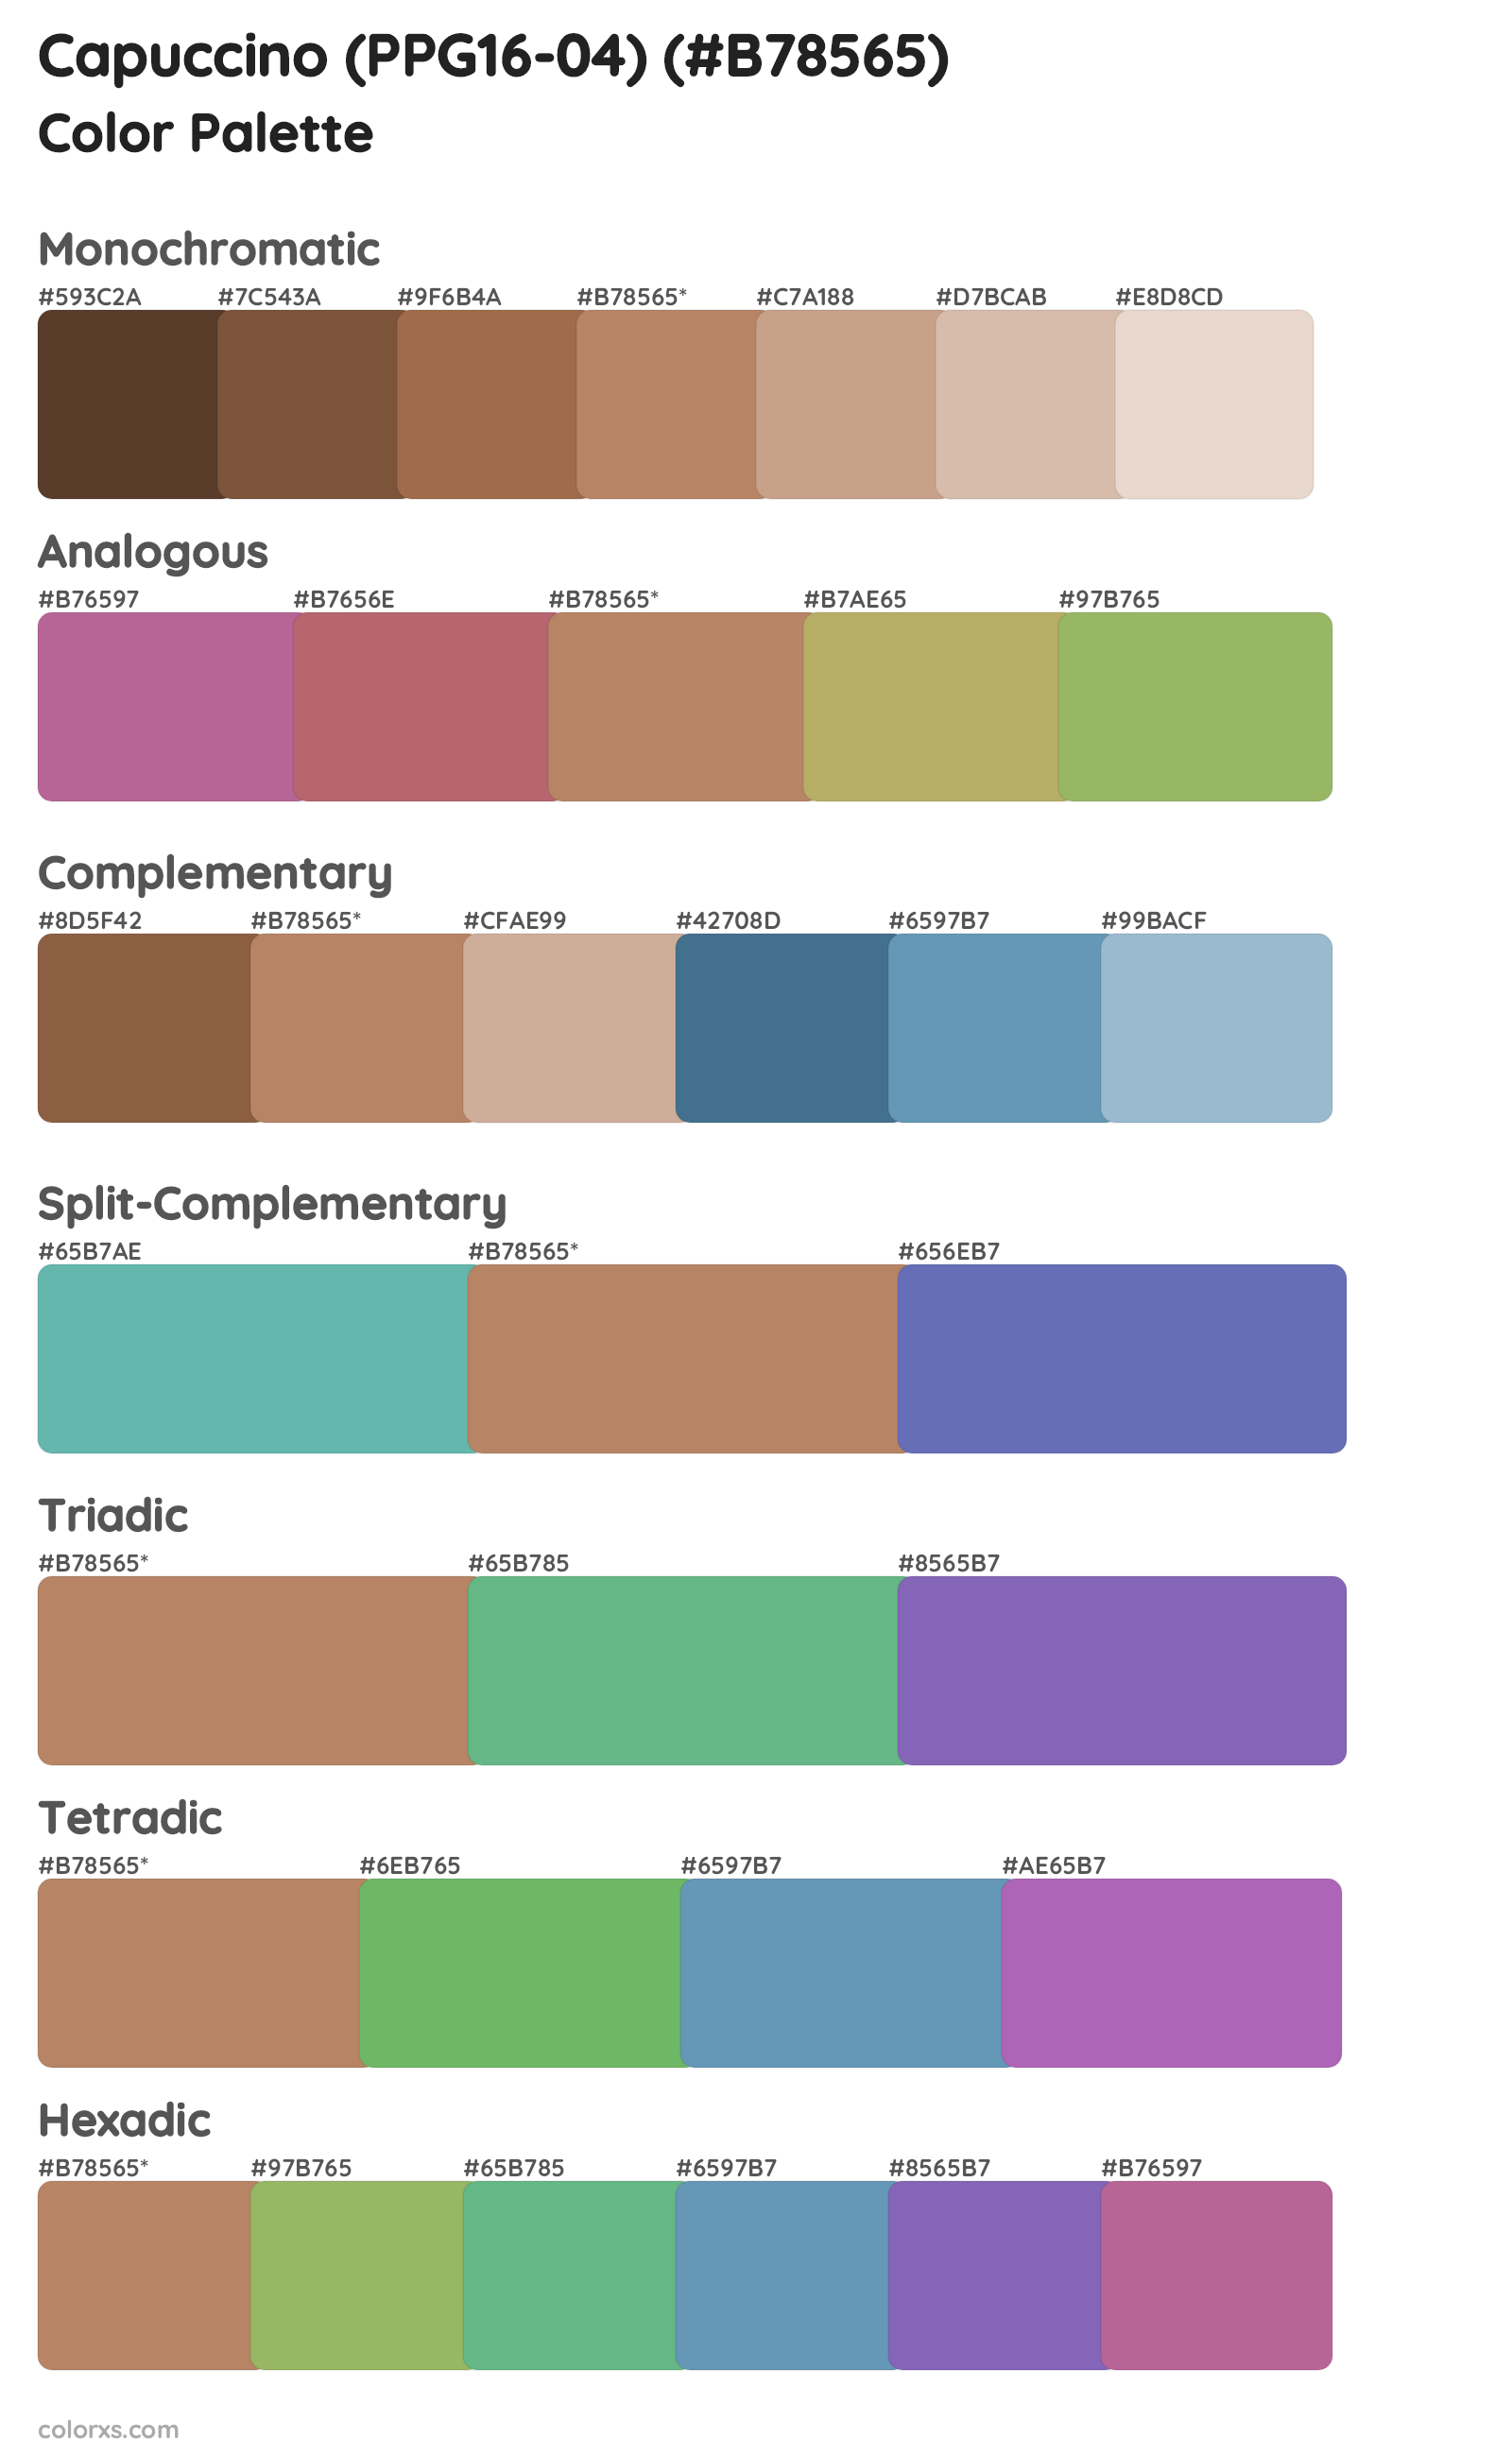 Capuccino (PPG16-04) Color Scheme Palettes